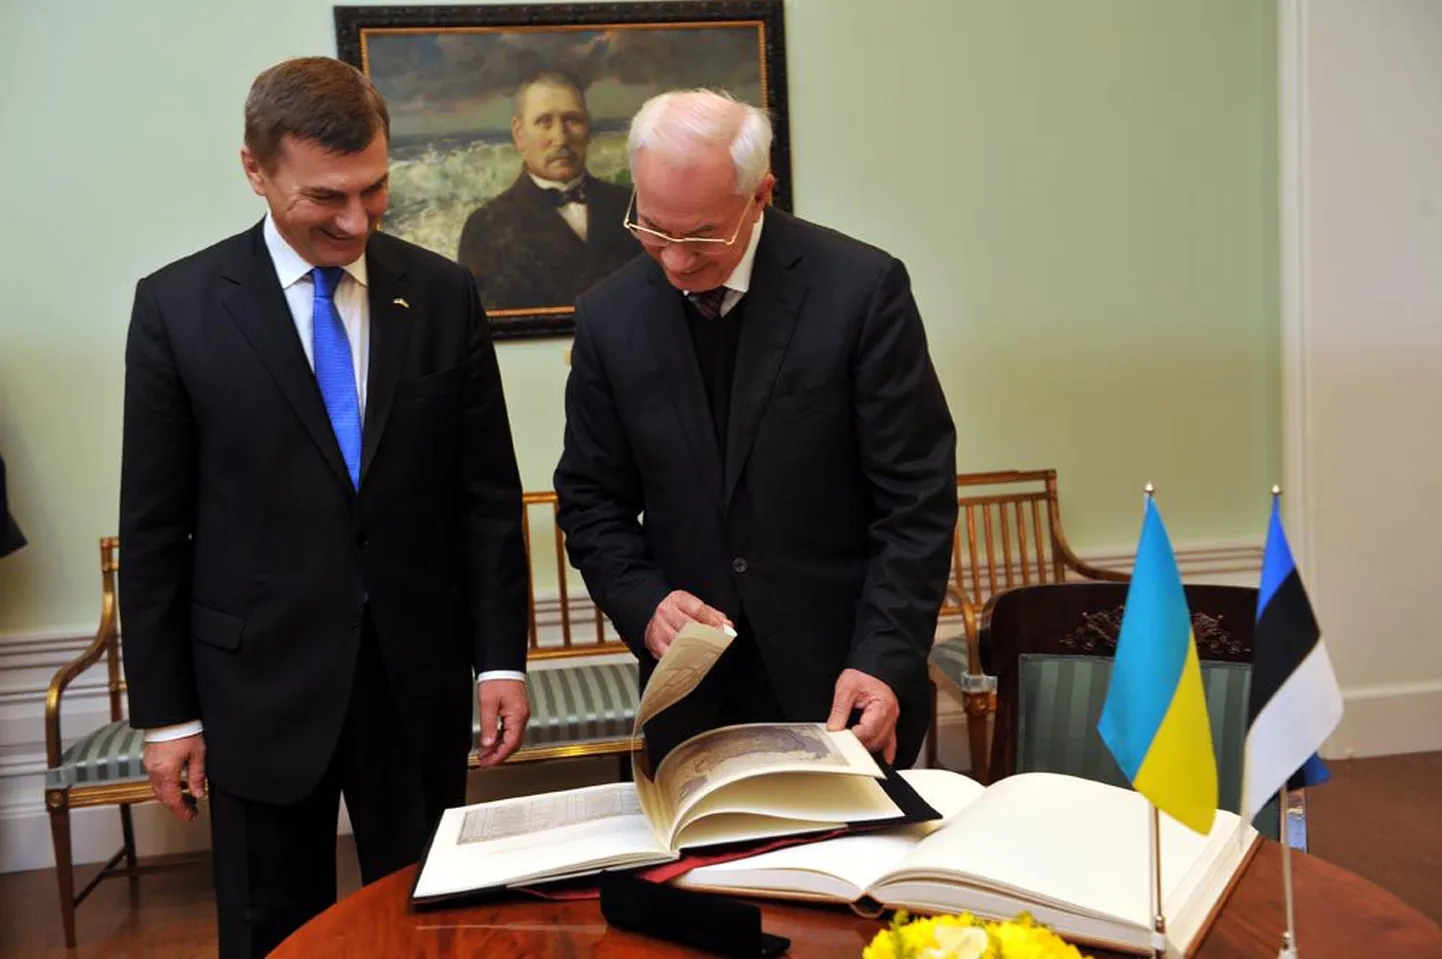 Eestit väisav Ukraina peaminister Mykola Azarov sai eile Andrus Ansipilt kingituseks raamatu, millesse muu hulgas on koondatud koopiad tema sugupuud ja esivanemaid puudutavatest arhiivimaterjalidest.